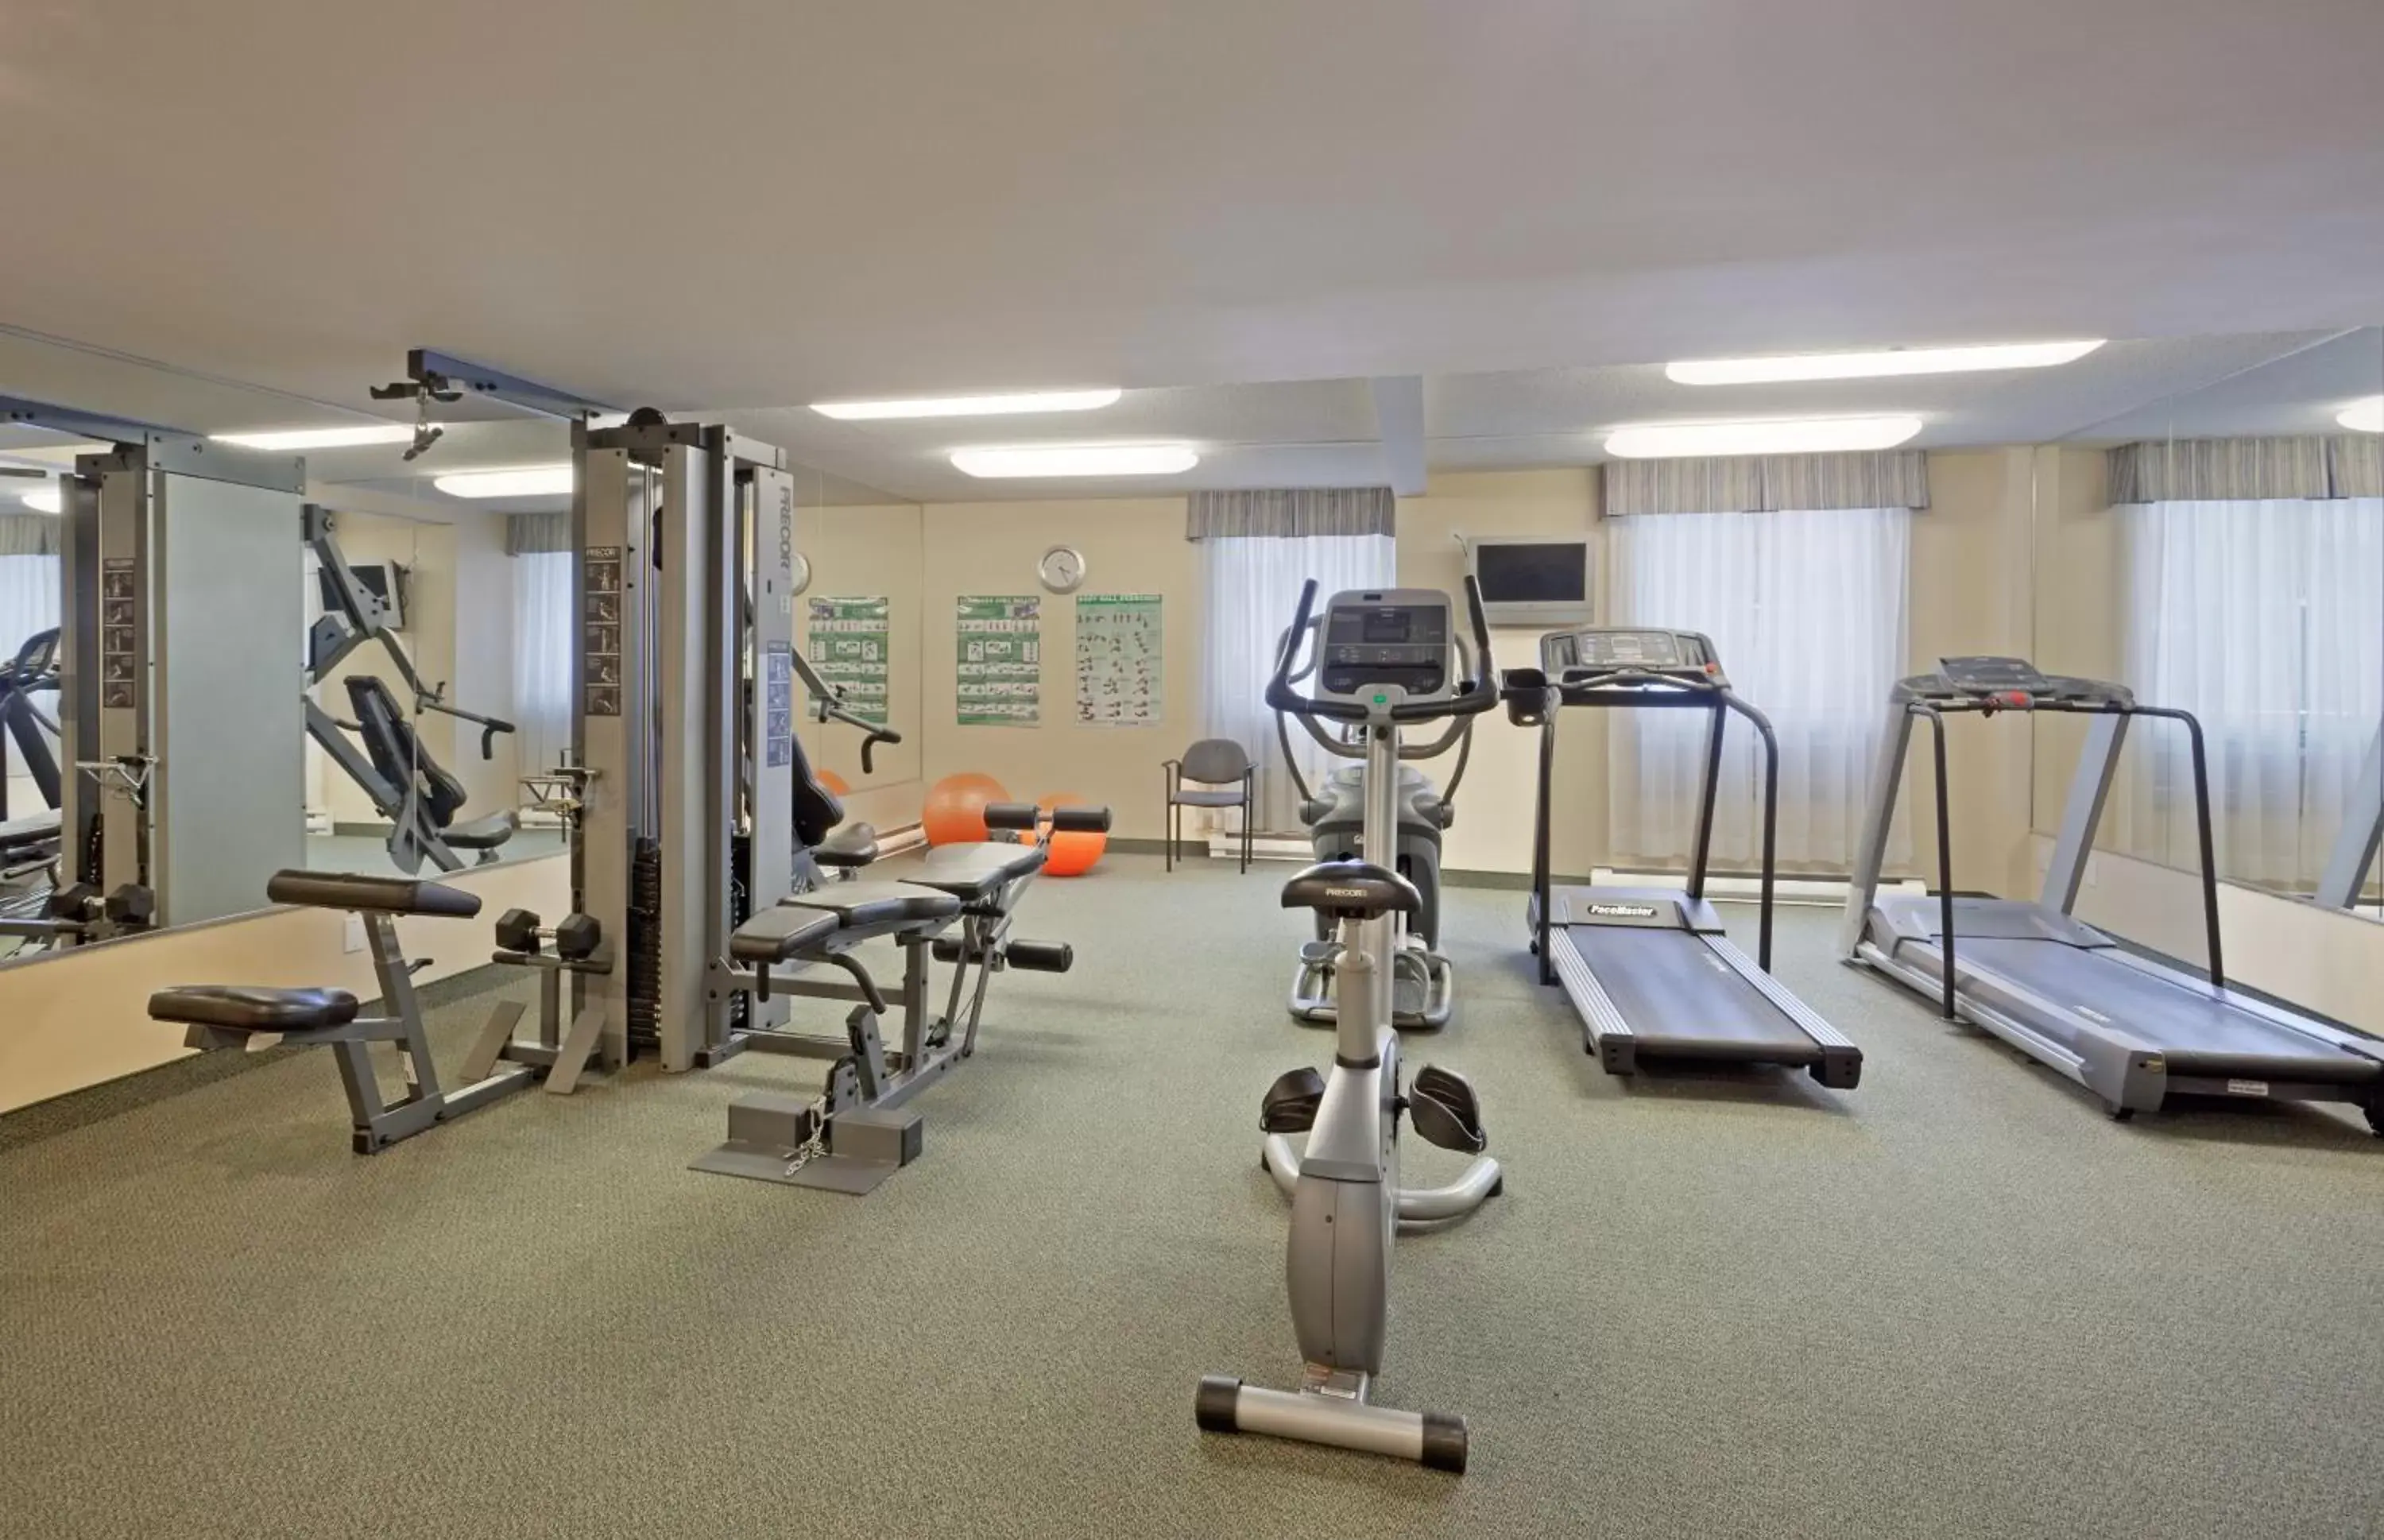 Fitness centre/facilities, Fitness Center/Facilities in Hôtel Saint-Laurent Montréal